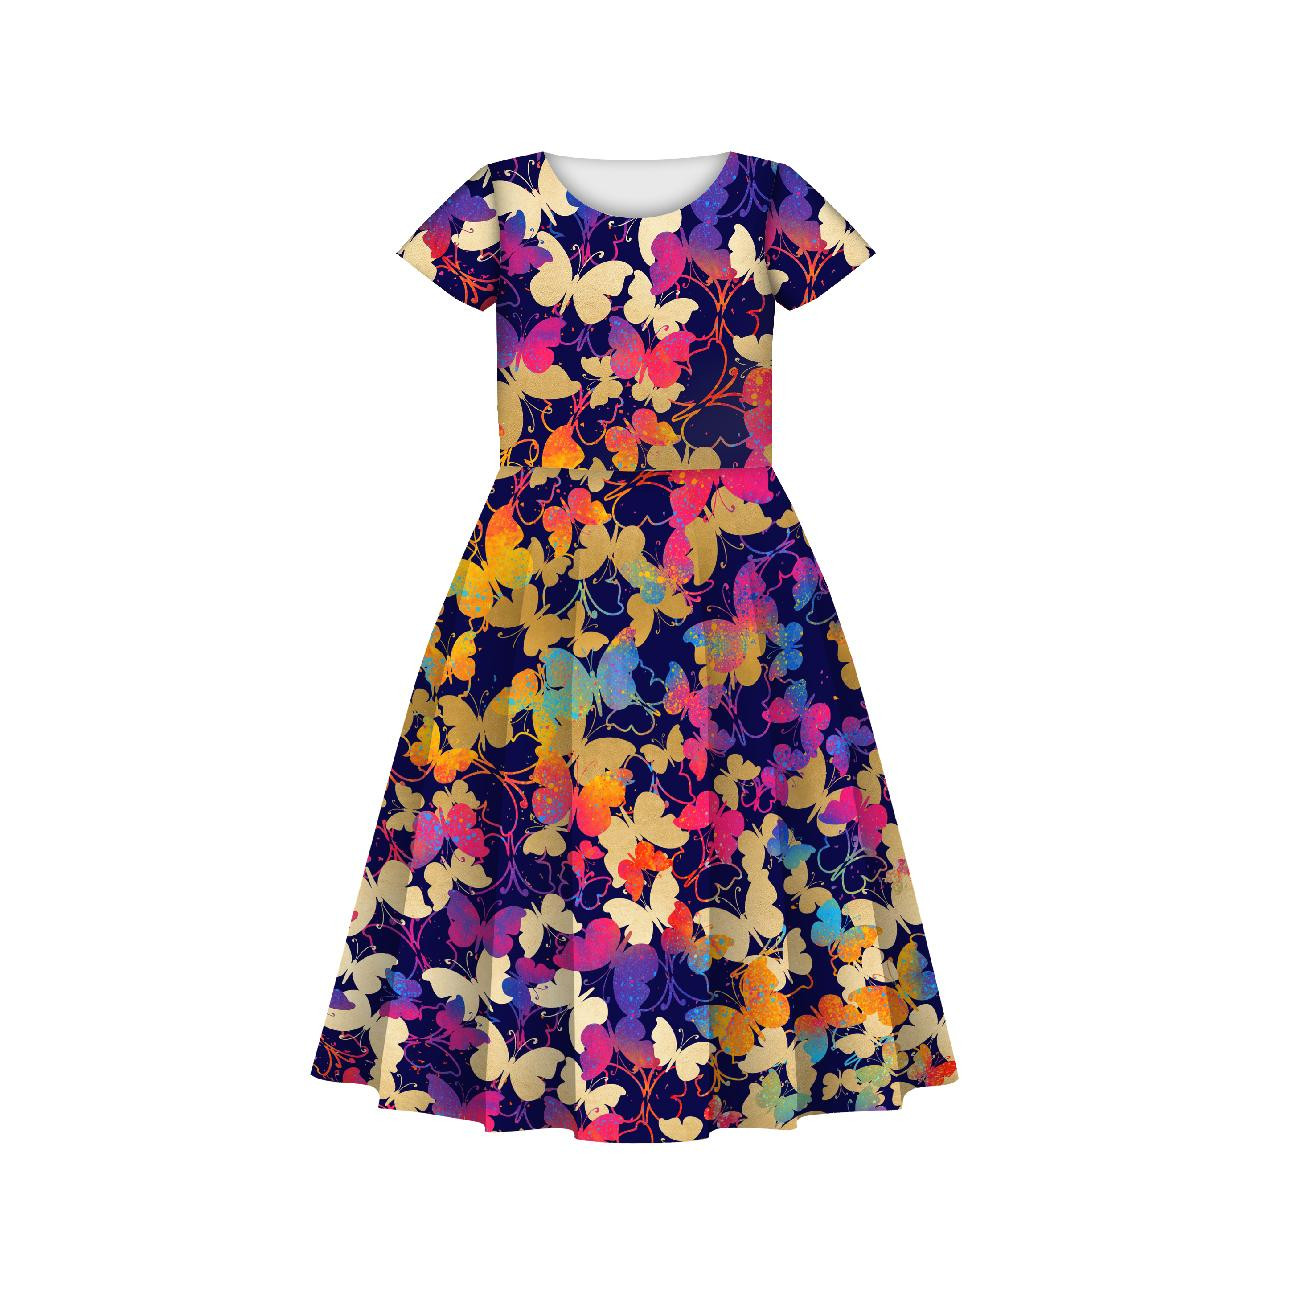 Dětské šaty "MIA" - MOTÝLCI / barevná - šicí souprava